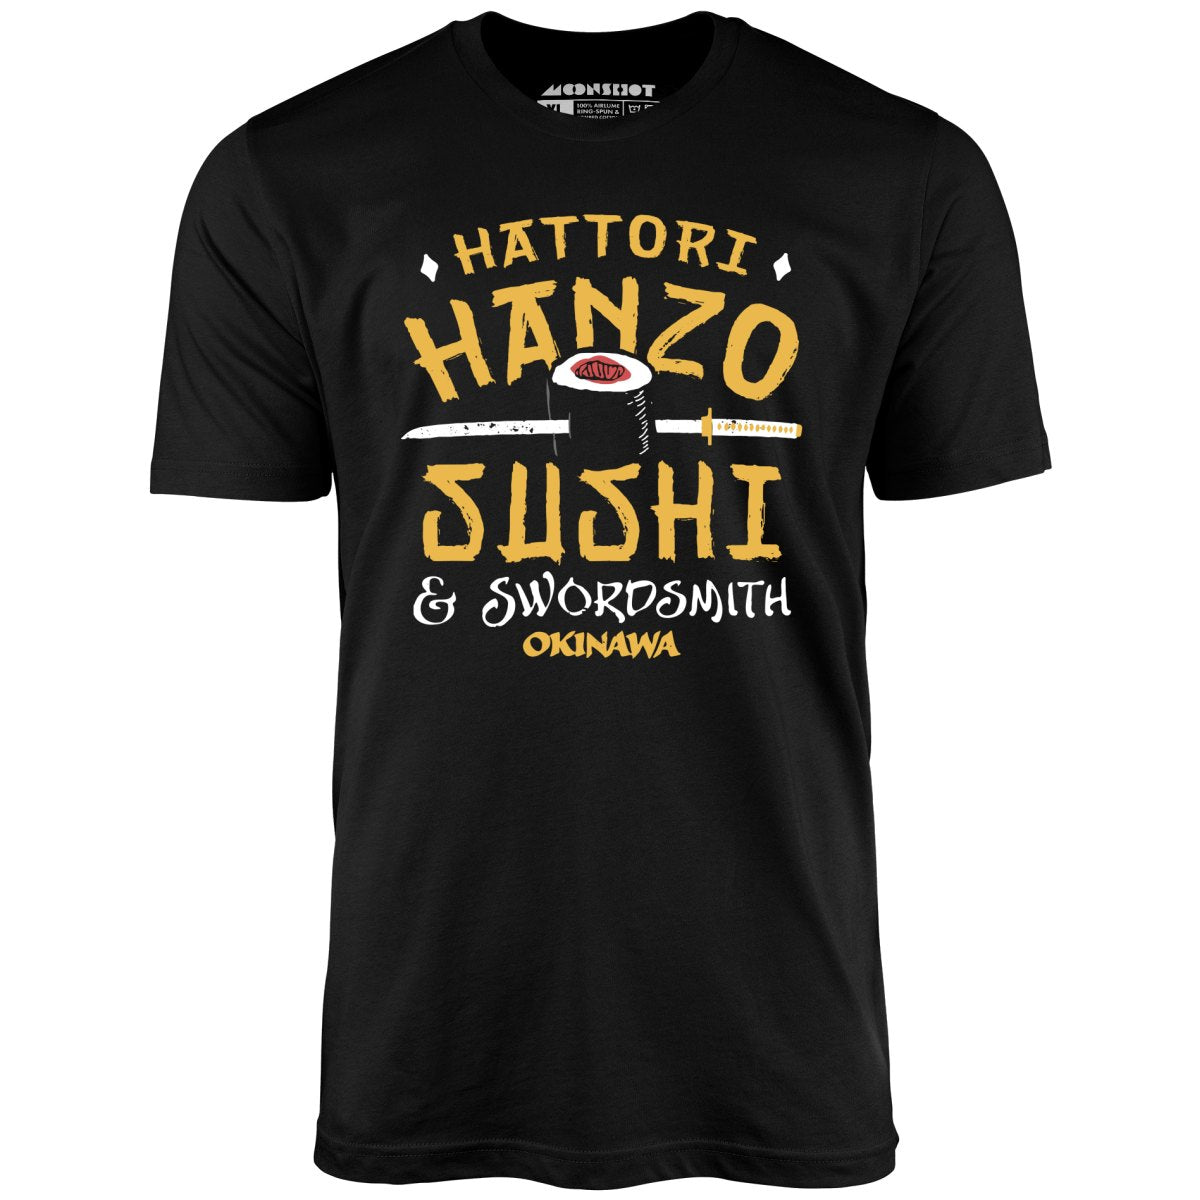 Hattori Hanzo Sushi & Swordsmith - Unisex T-Shirt